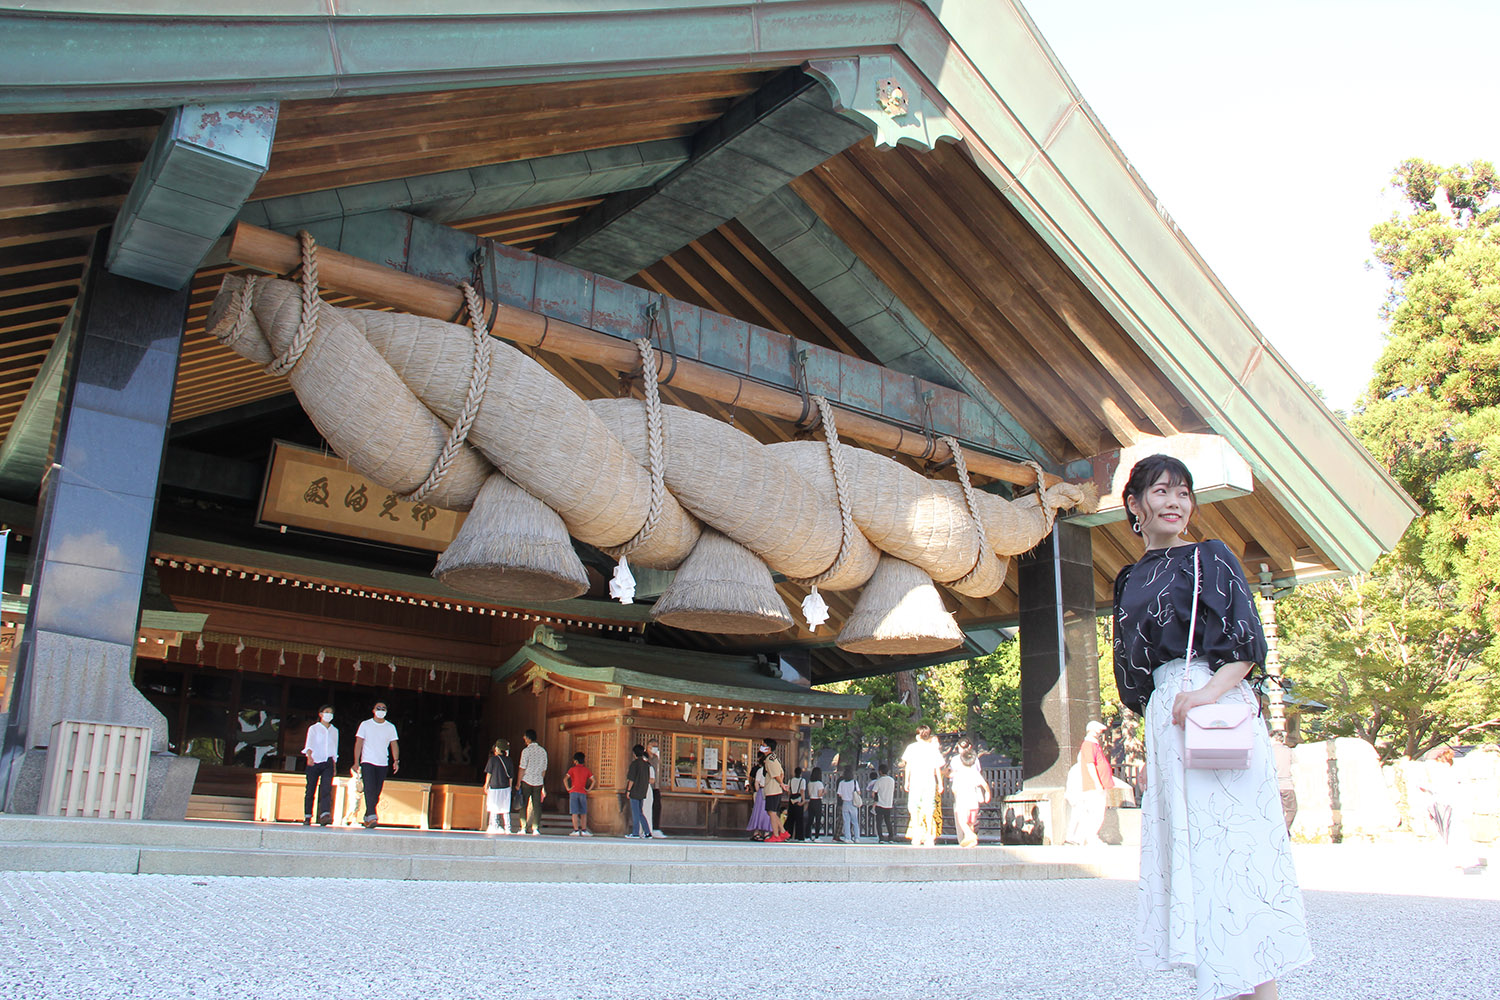 大しめ縄は、出雲大社から50kmほど離れた島根県飯南町で、地元産の稲わらから手作りされたもの